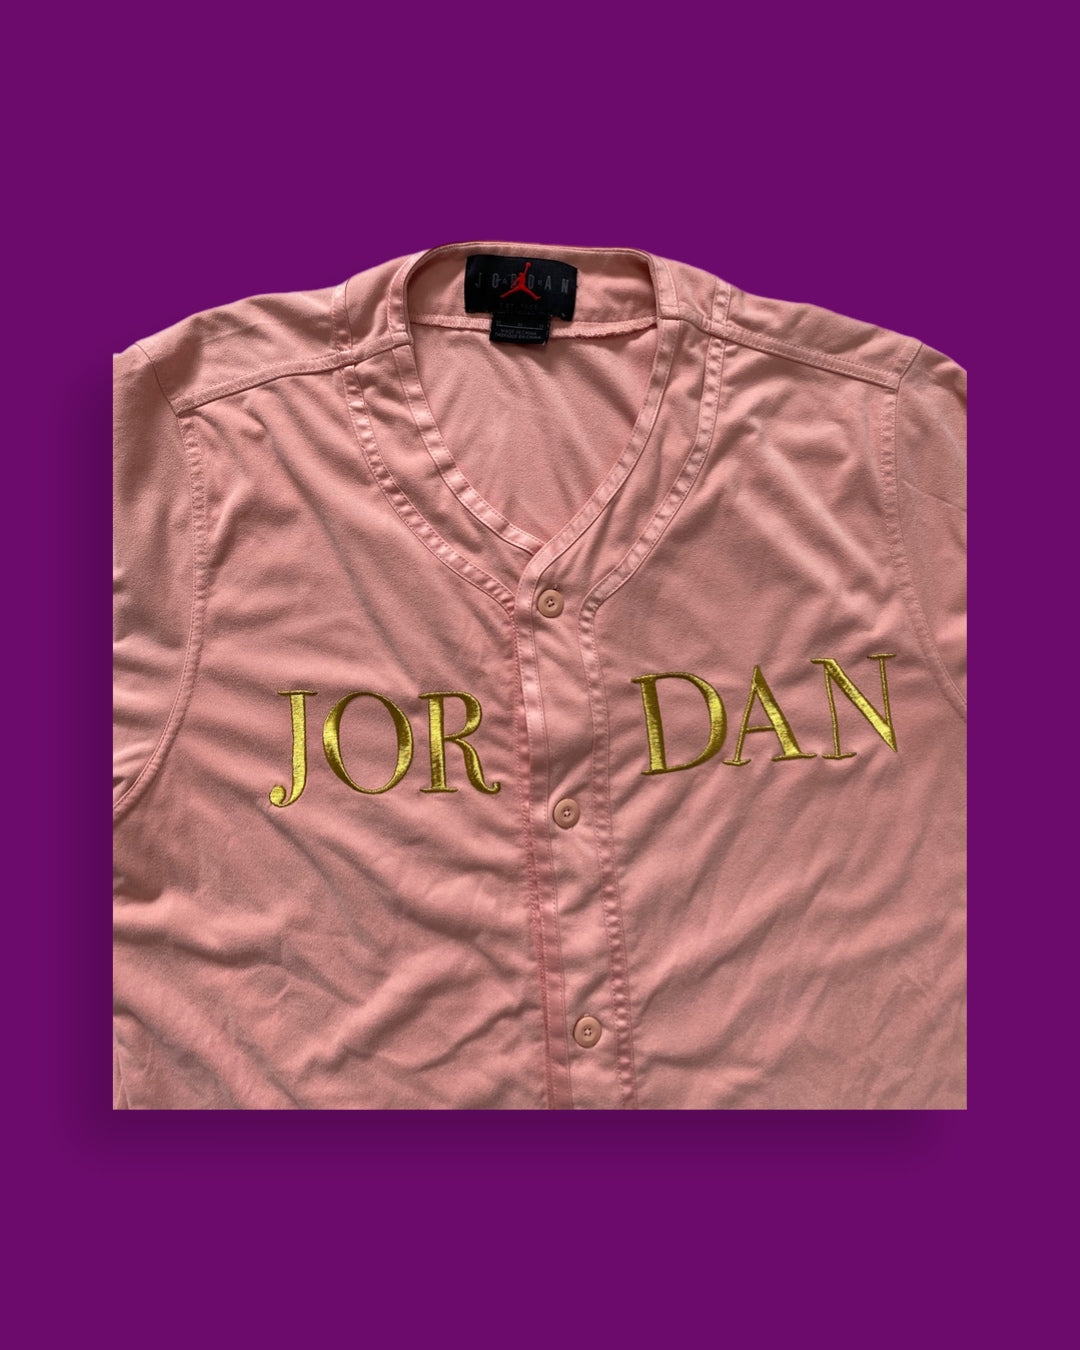 Jordan Shirt